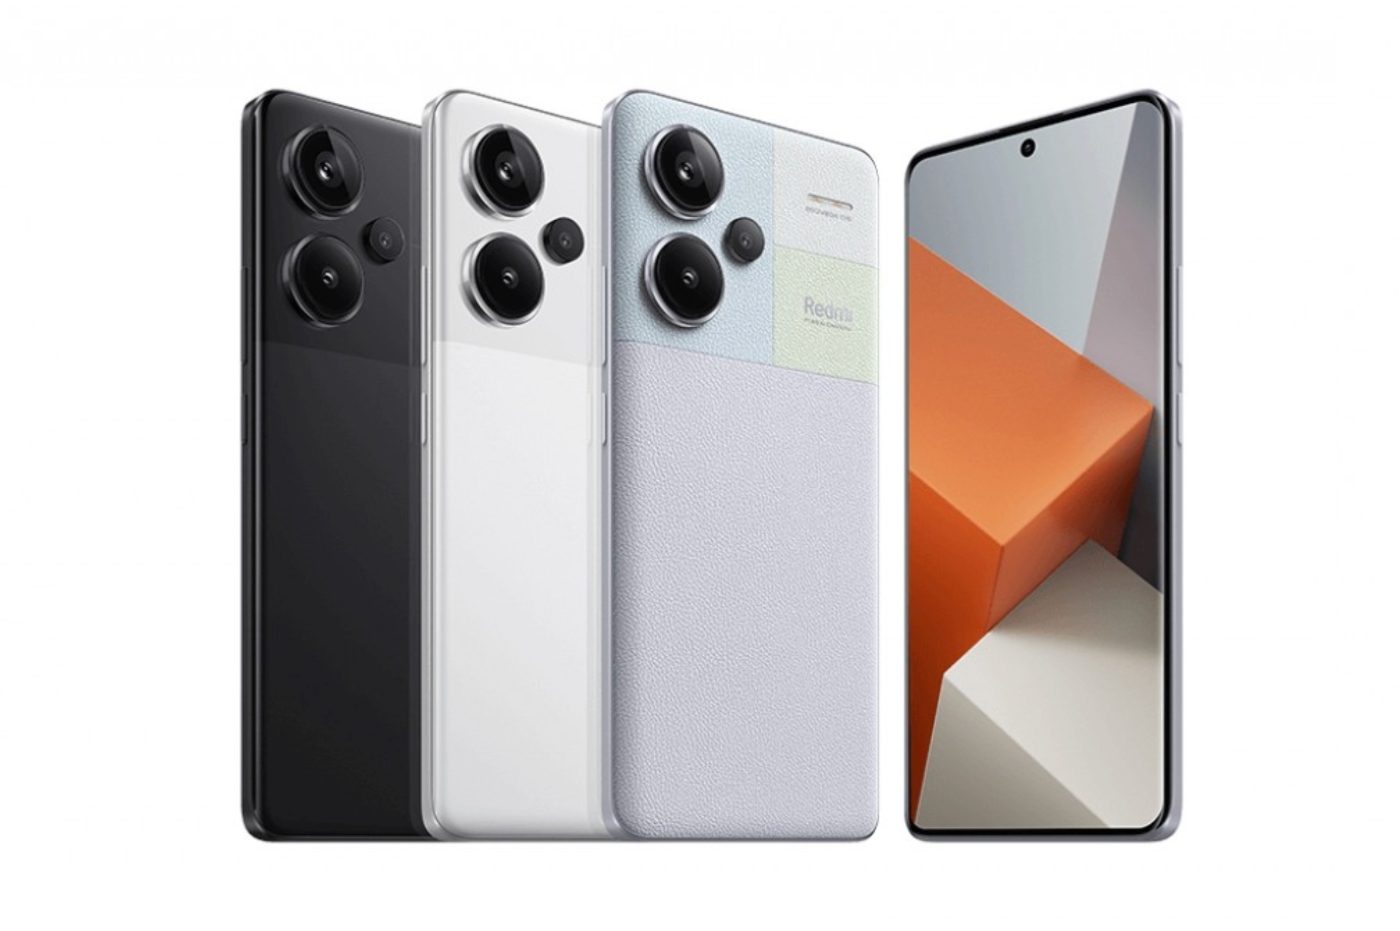 Xiaomi Redmi Note 13 et 13 Pro officiels : les nouveaux champions du  rapport qualité-prix ?